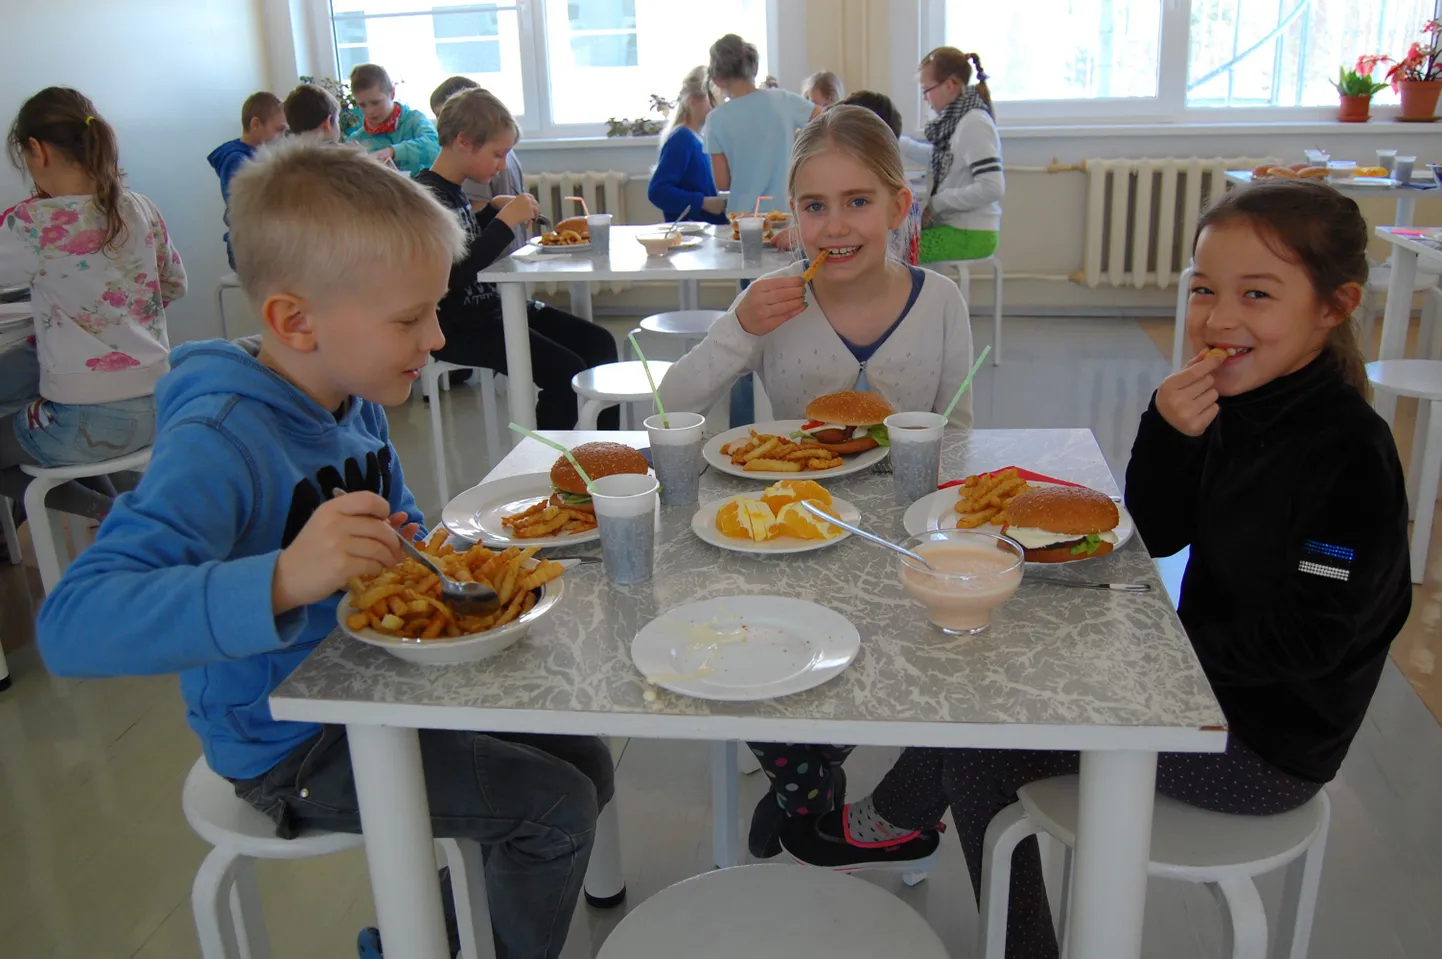 Esimese klassi õpilased Gert Vainoja, Paula Andreson ja Kertu Lass kiitsid teistmoodi lõunasööki.